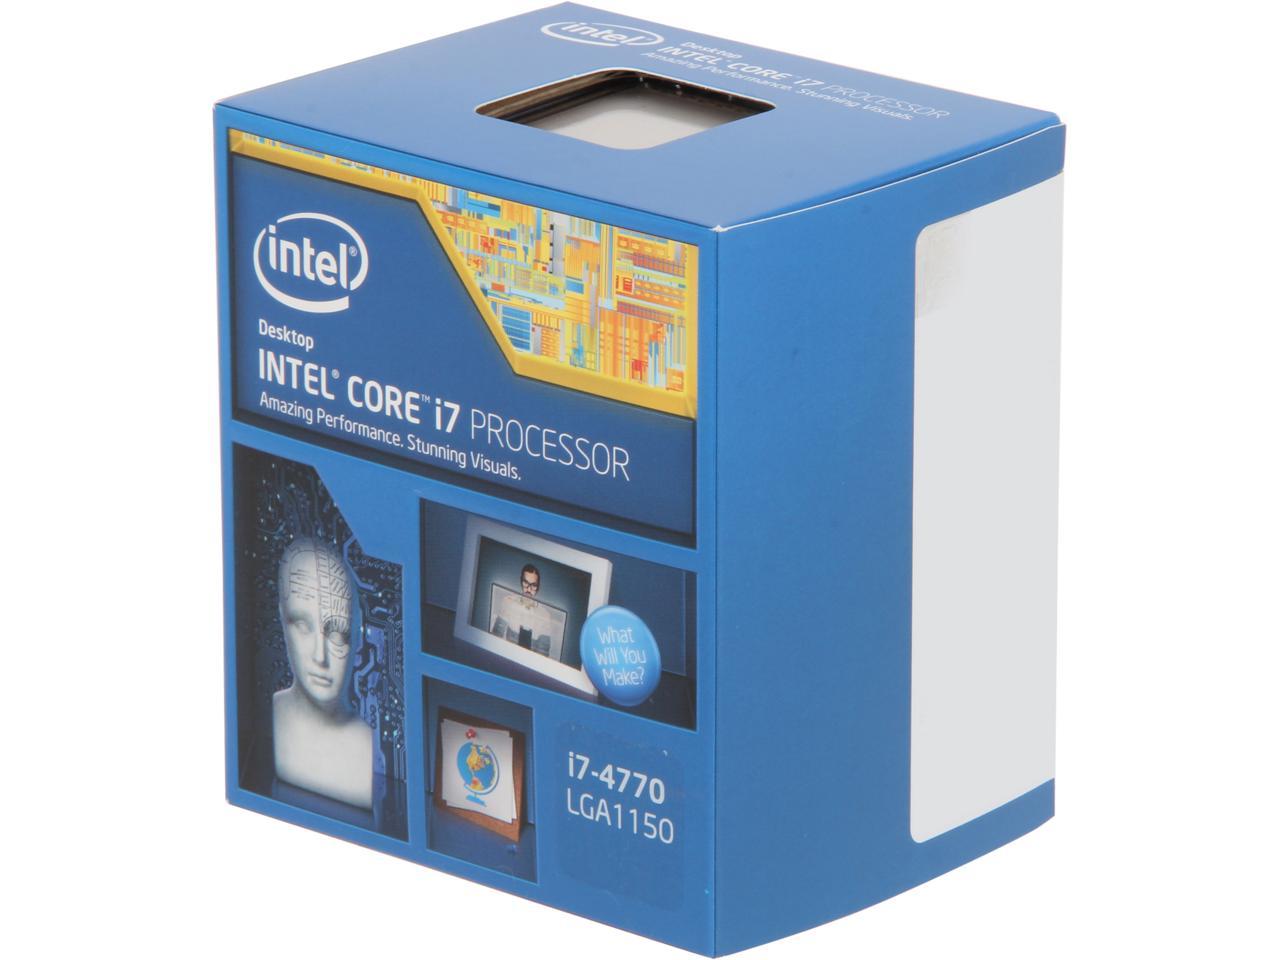 Rechthoek sticker Geschikt Intel Core i7-4770 3.4 GHz LGA 1150 Desktop Processor - Newegg.com